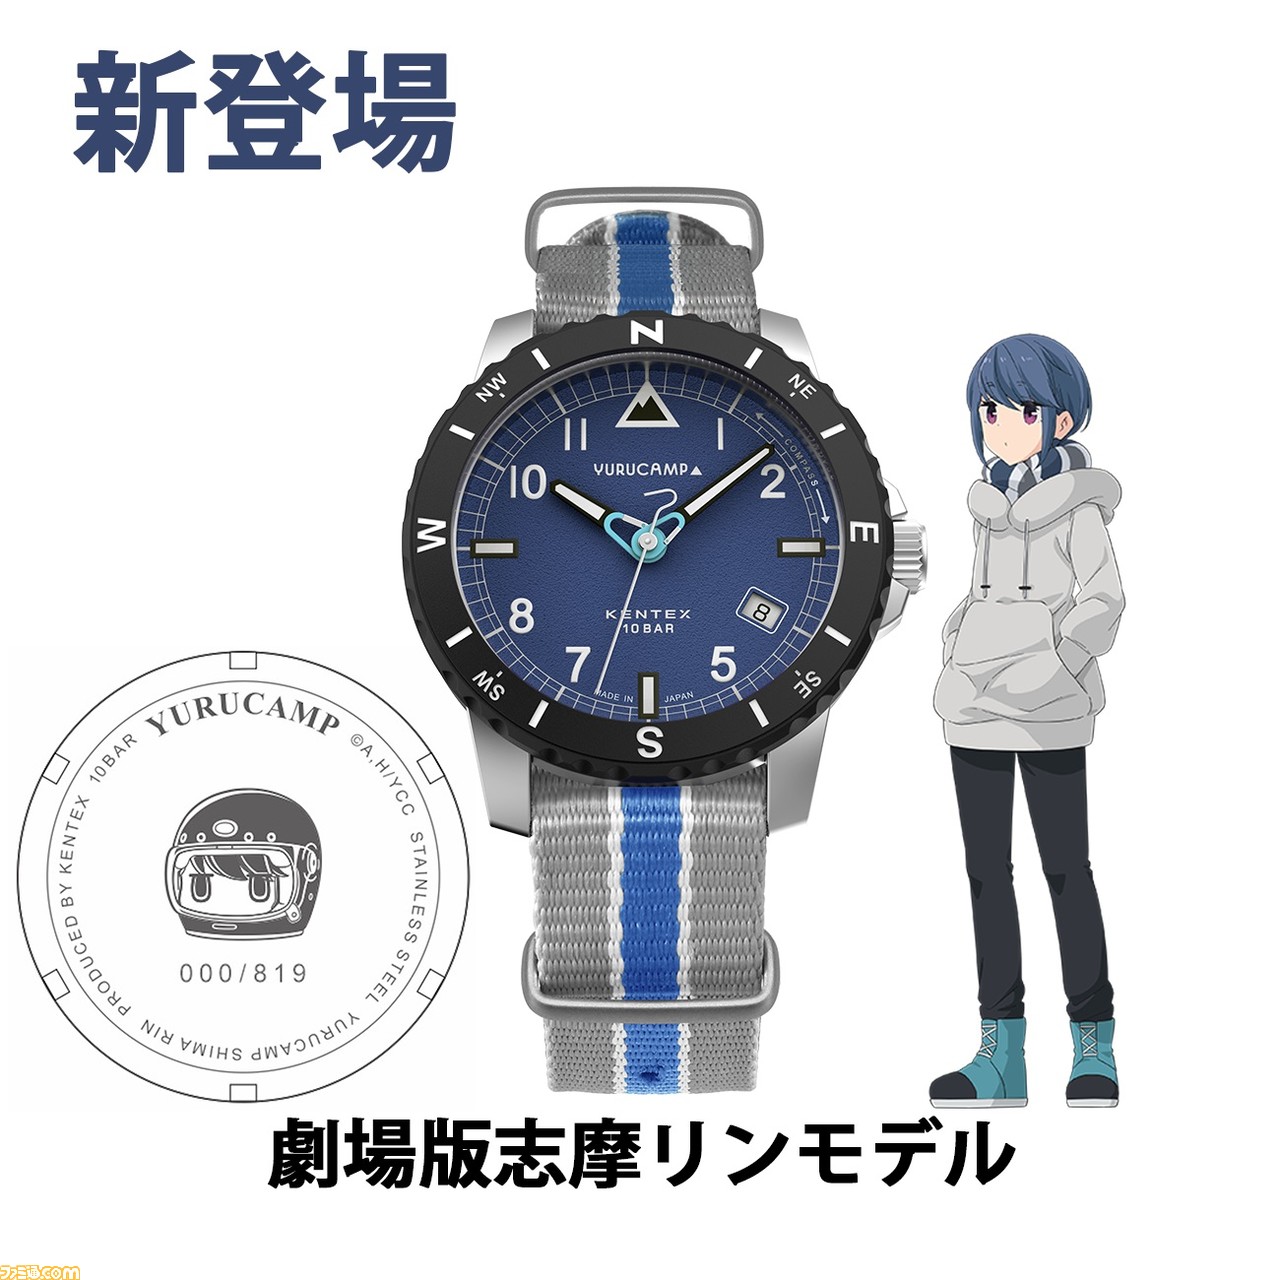 ゆるキャン△』×ケンテックスのコラボ腕時計の2次生産予約が開始